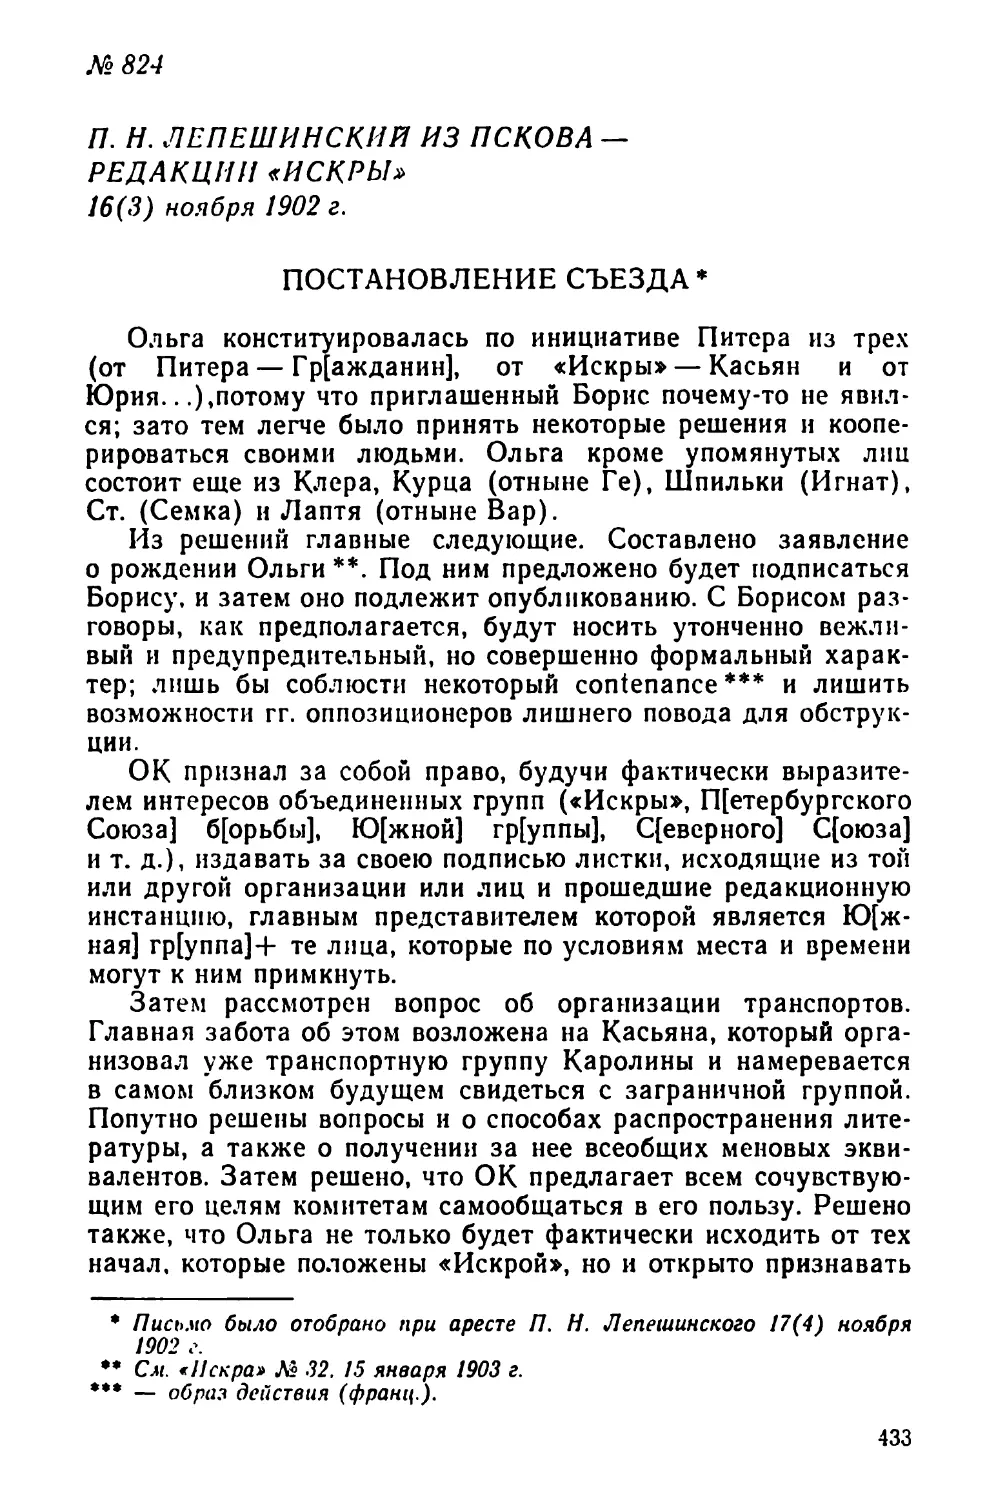 № 824 П. Н. Лепешинский из Пскова — редакции «Искры». 16 ноября